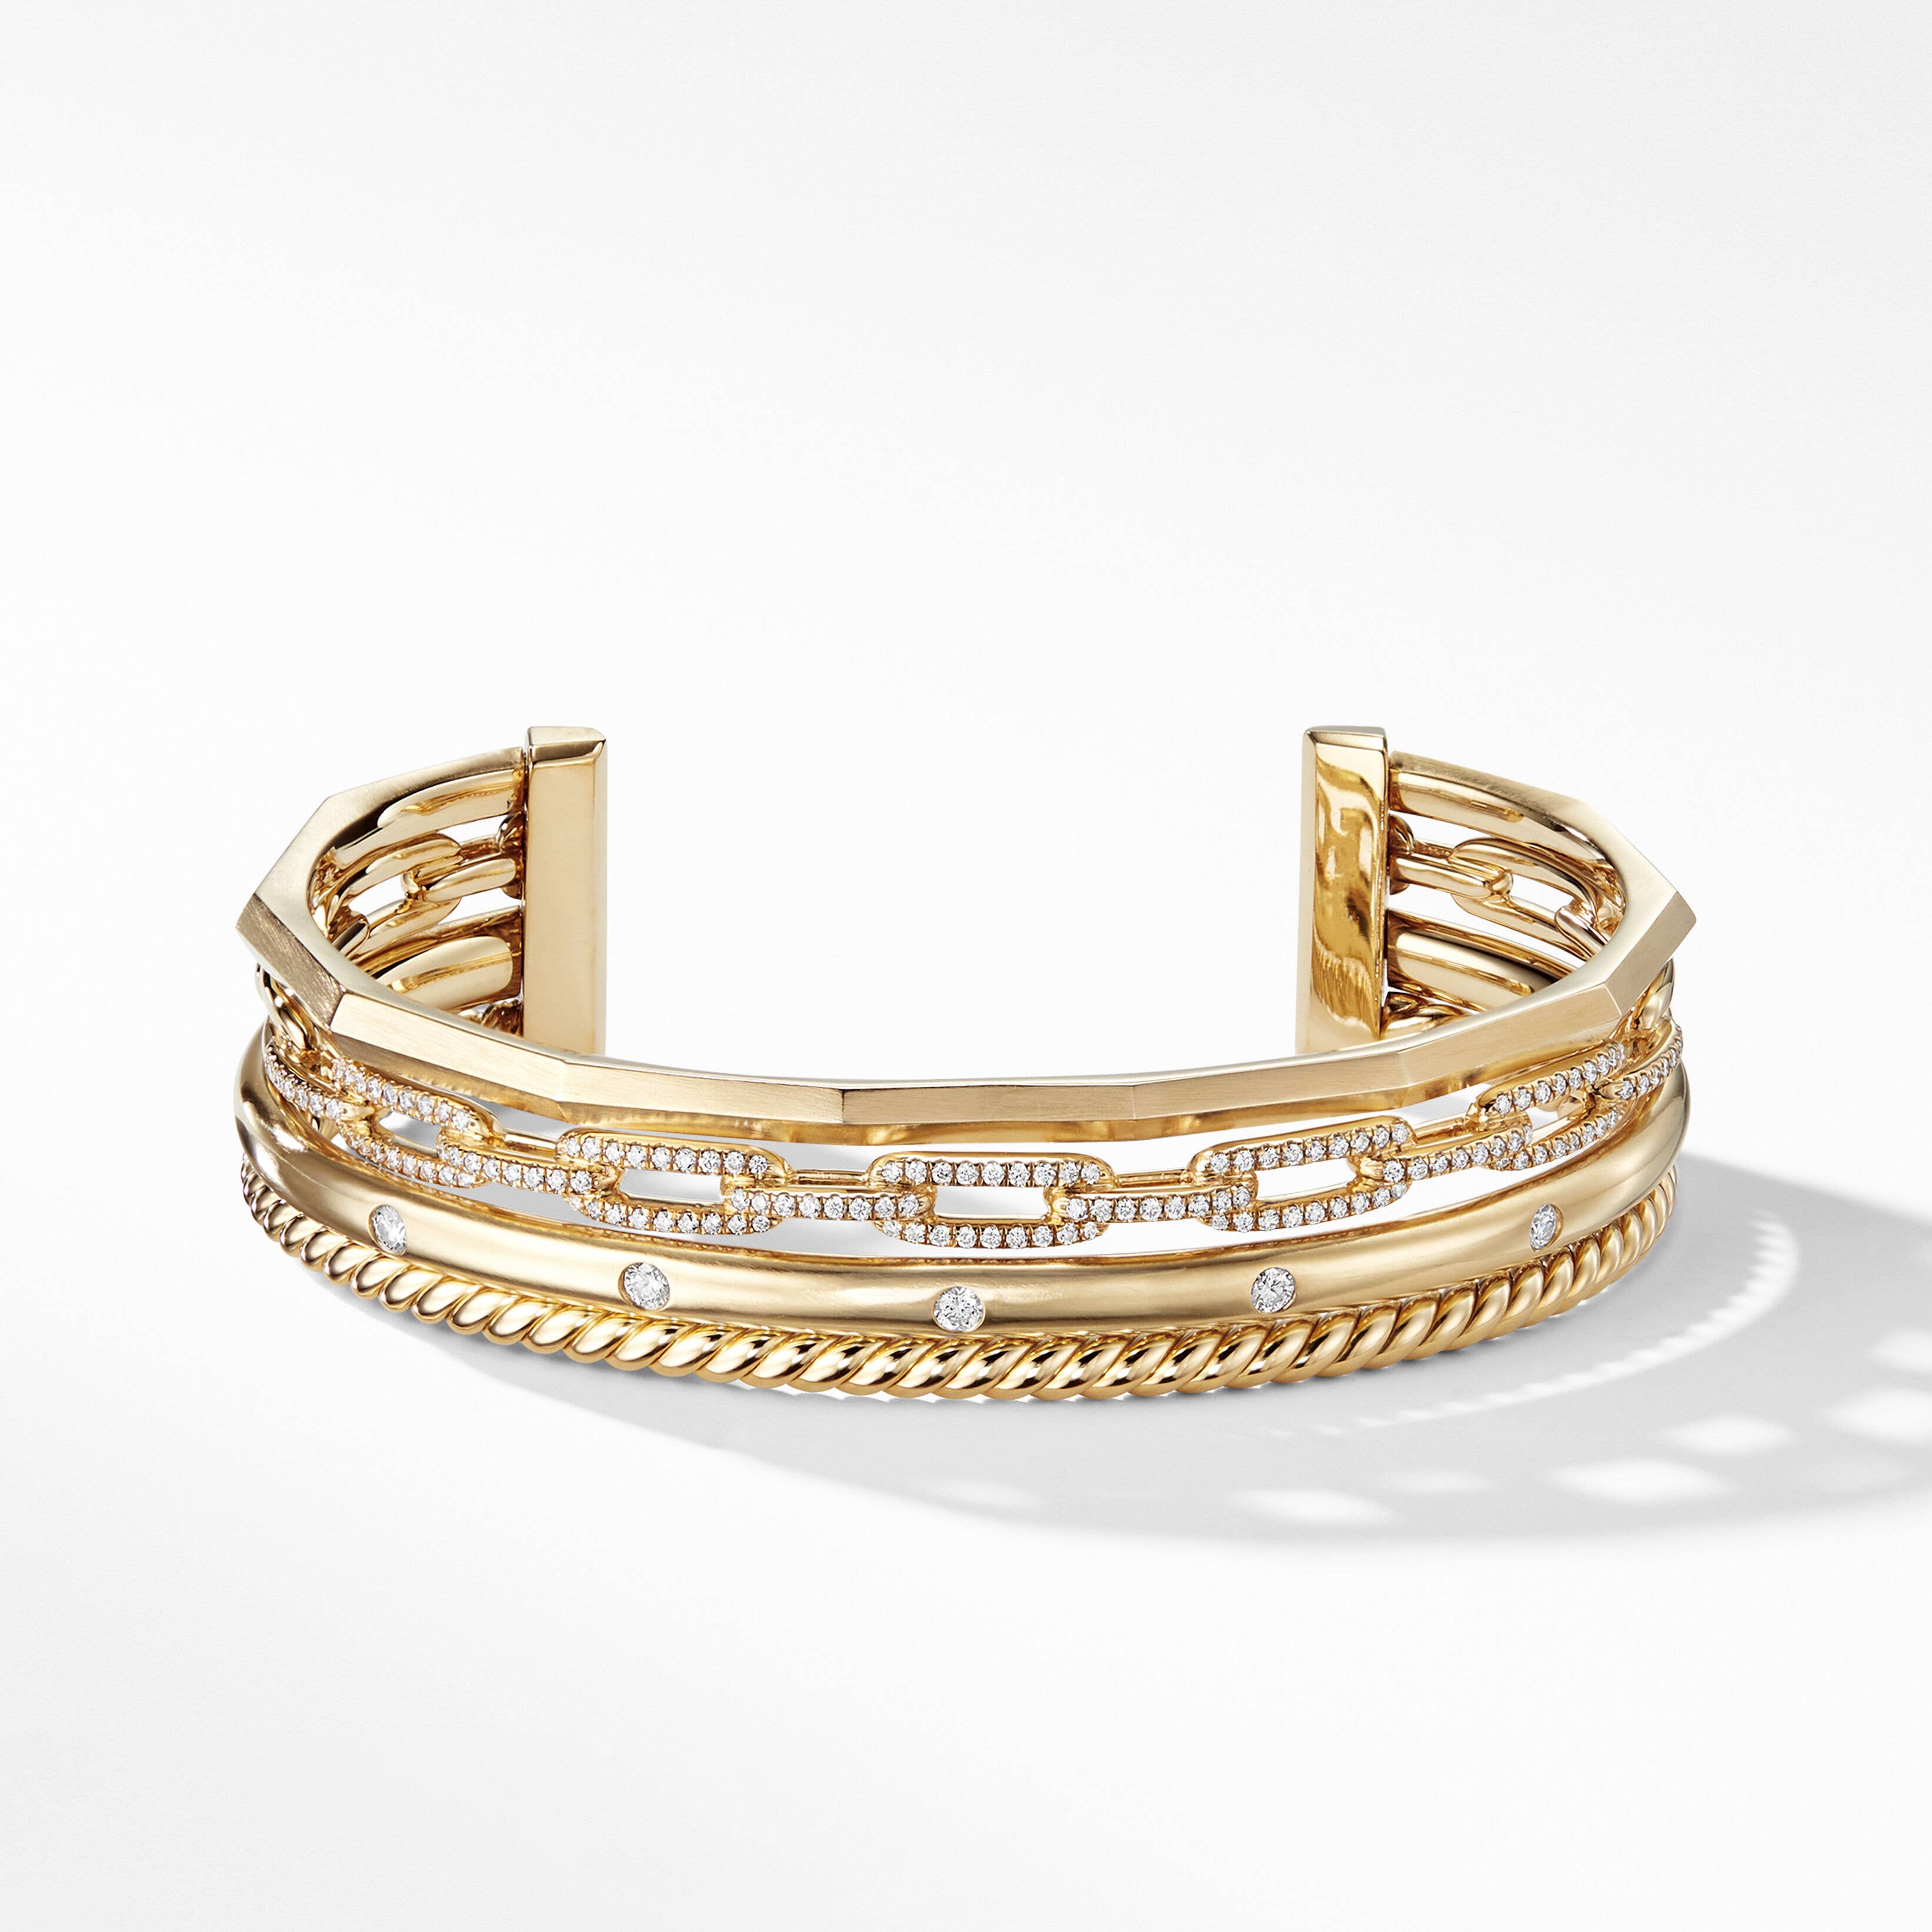 Stax Four Row Cuff Bracelet in 18K Yellow Gold with Pavé Diamonds